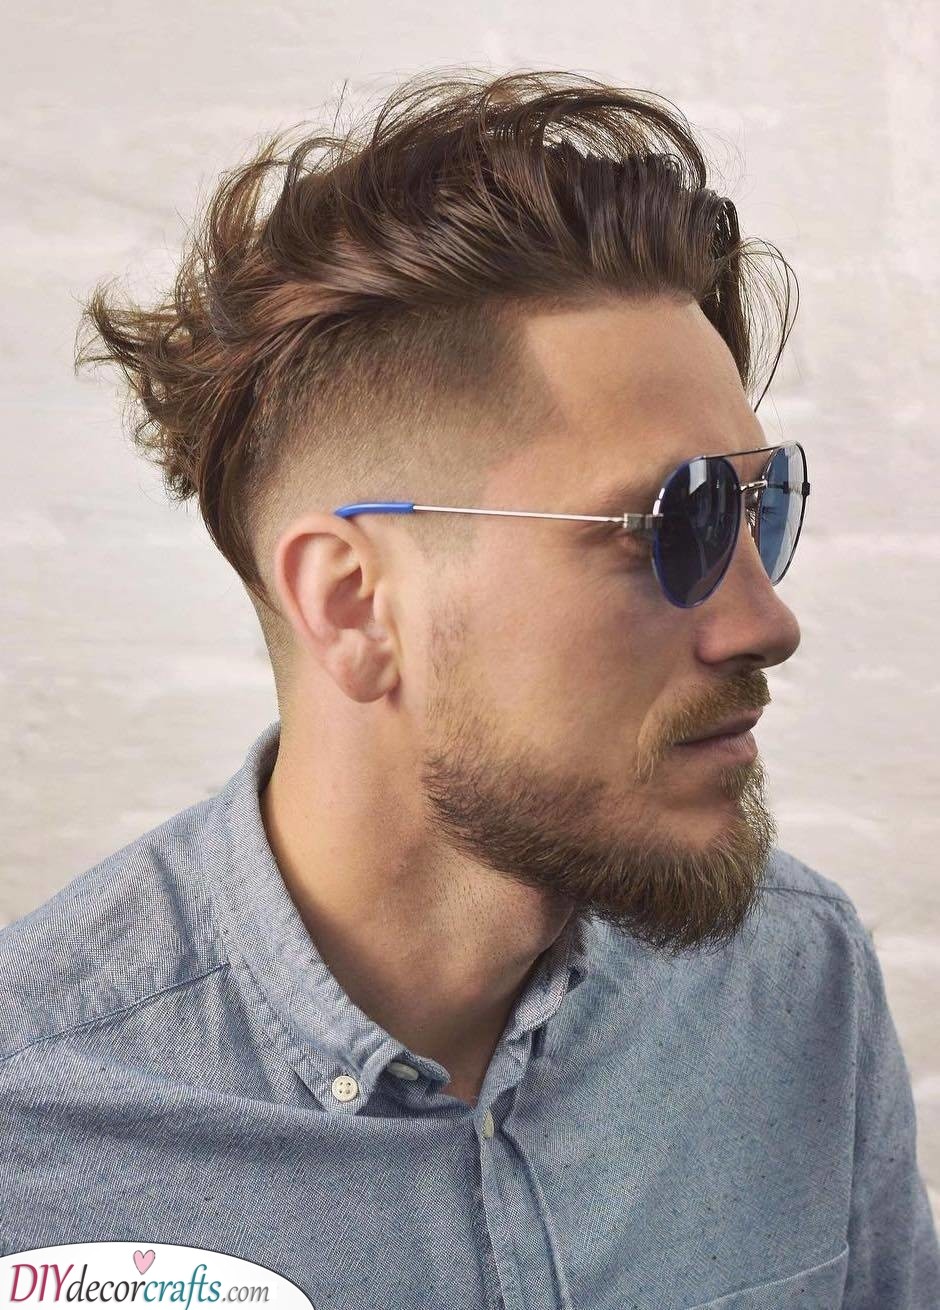 MEDIUM LENGTH BEARD STYLES - Men's Medium Beard Styles